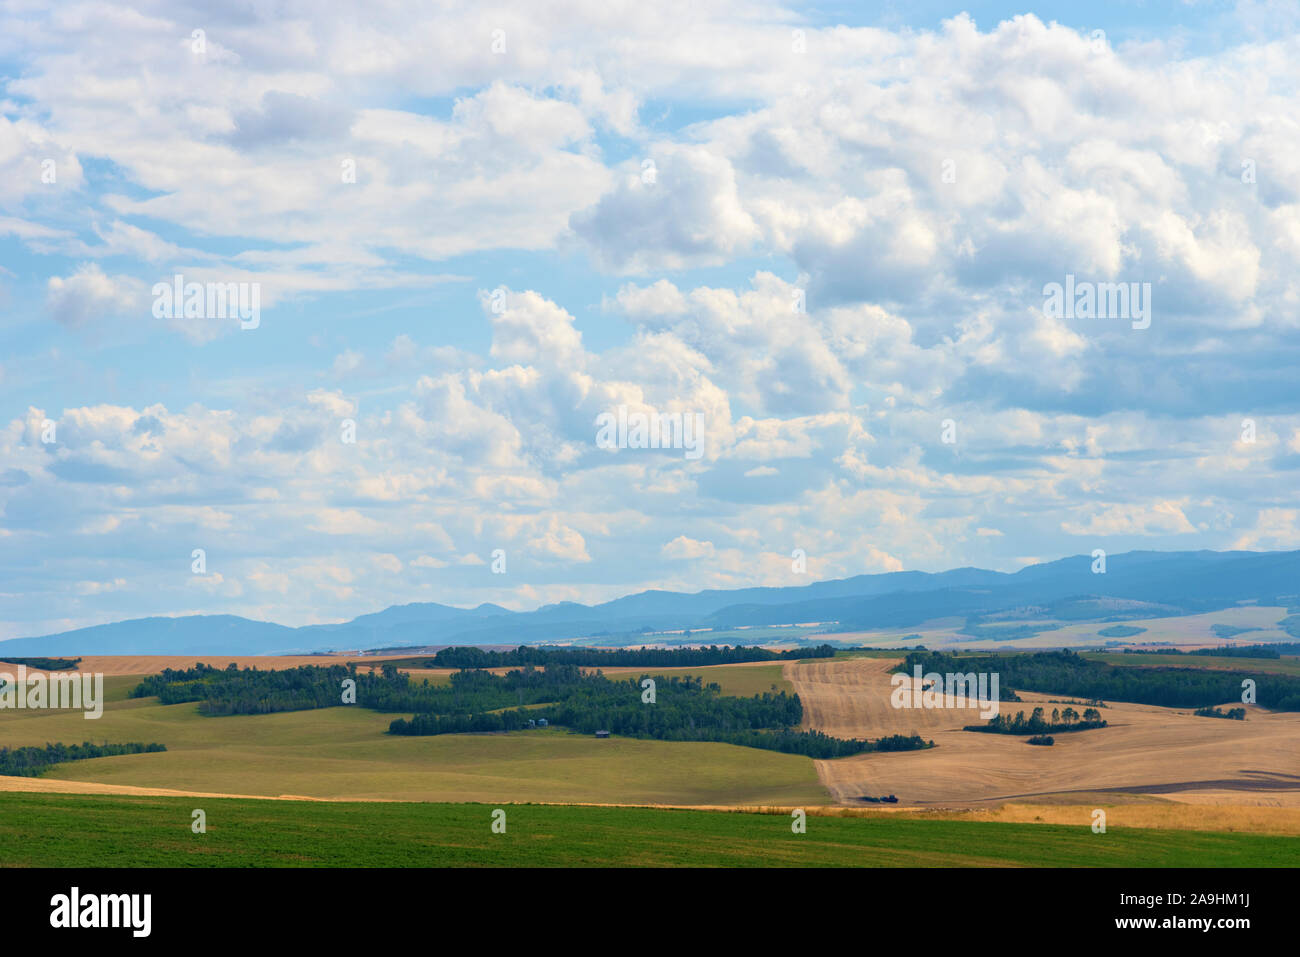 Blick über grüne und goldene Felder von Ackerland mit weit entfernten, duftigen Bergen unter blauem bewölktem Himmel. Stockfoto